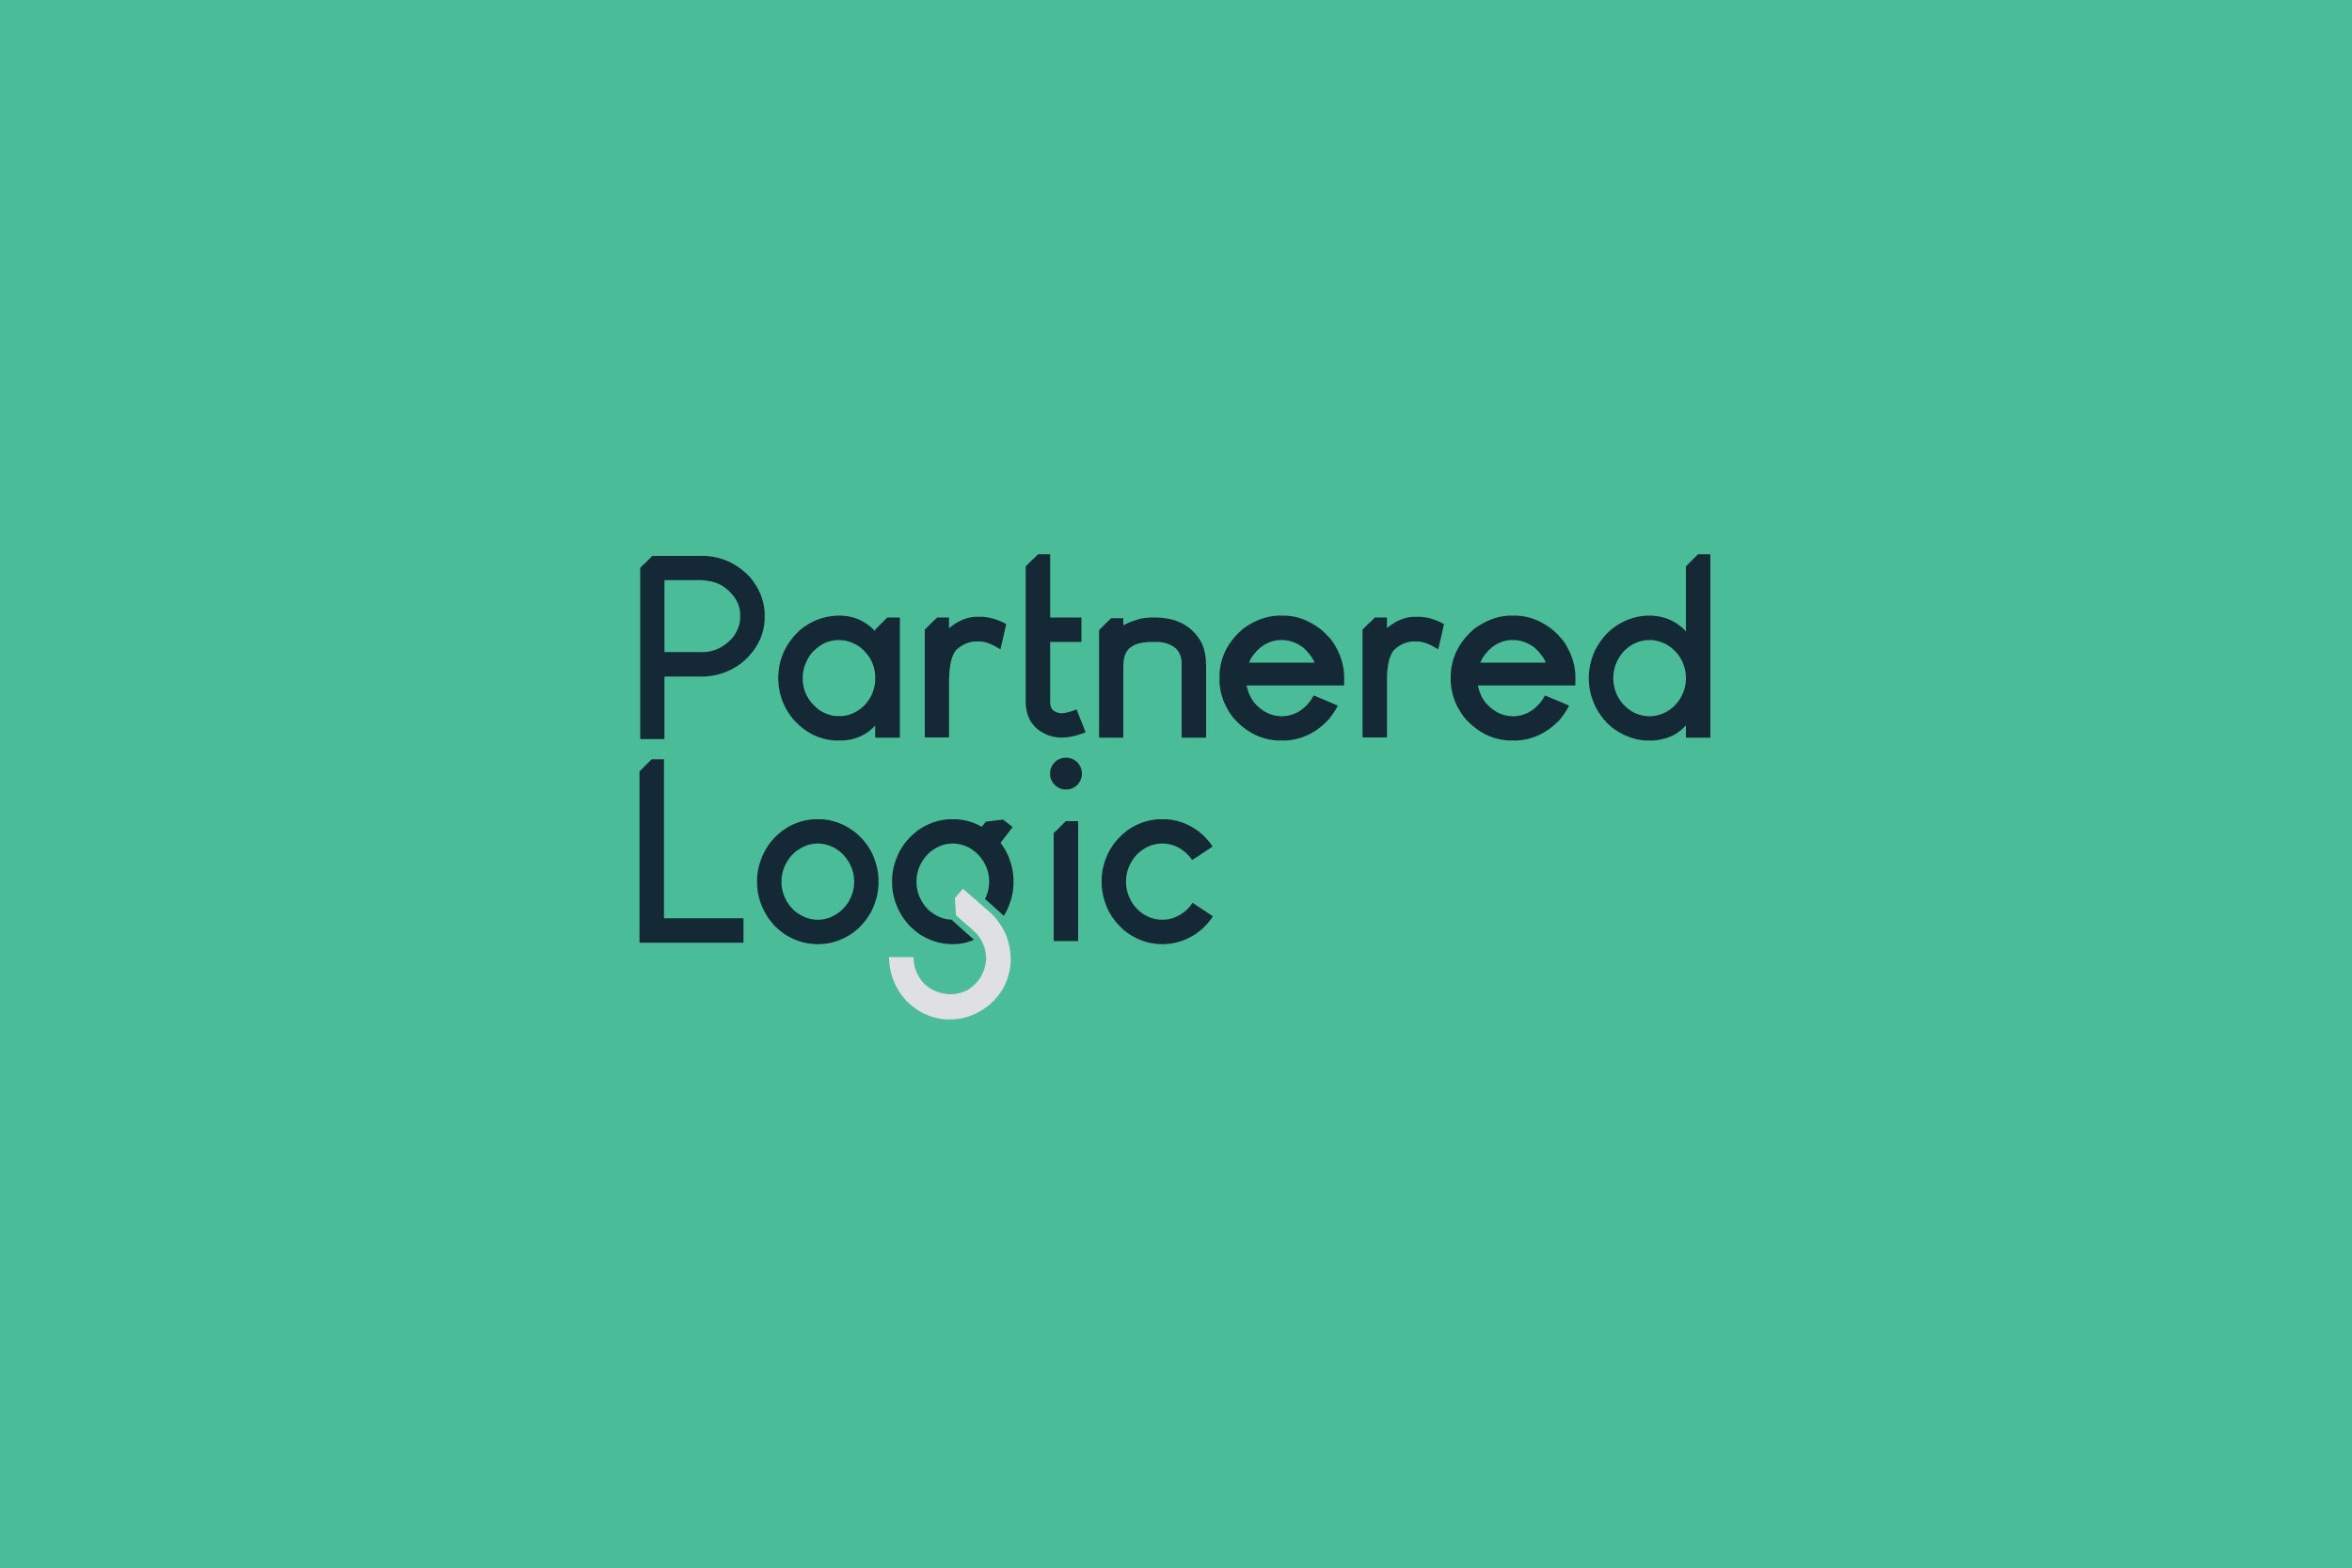 Partnered-Logic-Wordmark-1.jpg